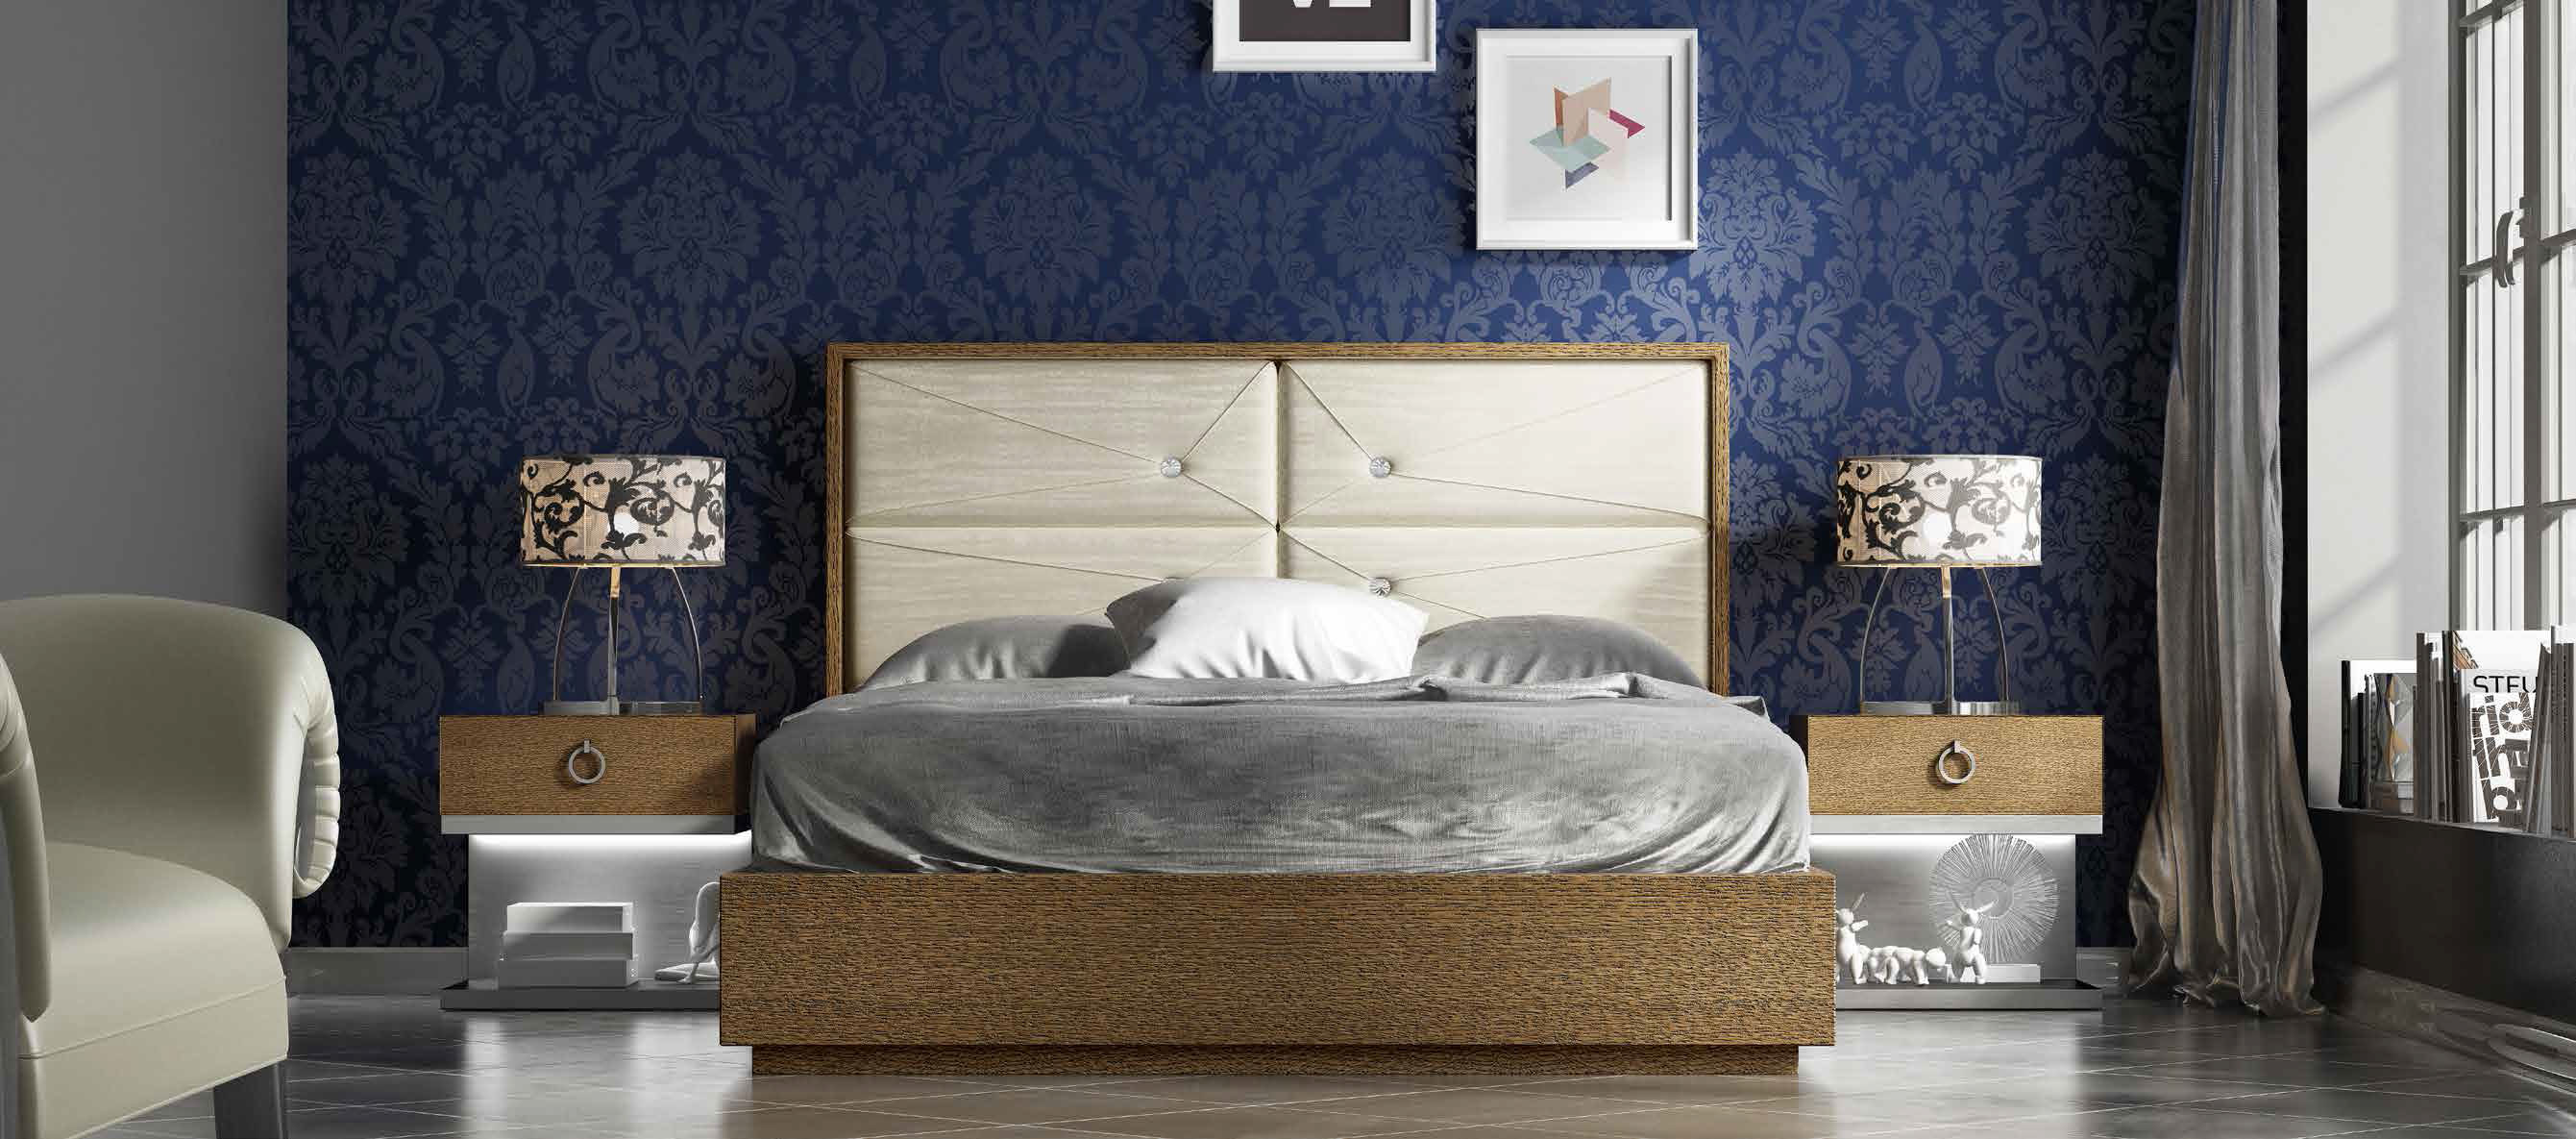 Brands Franco Furniture Avanty Bedrooms, Spain DOR 39